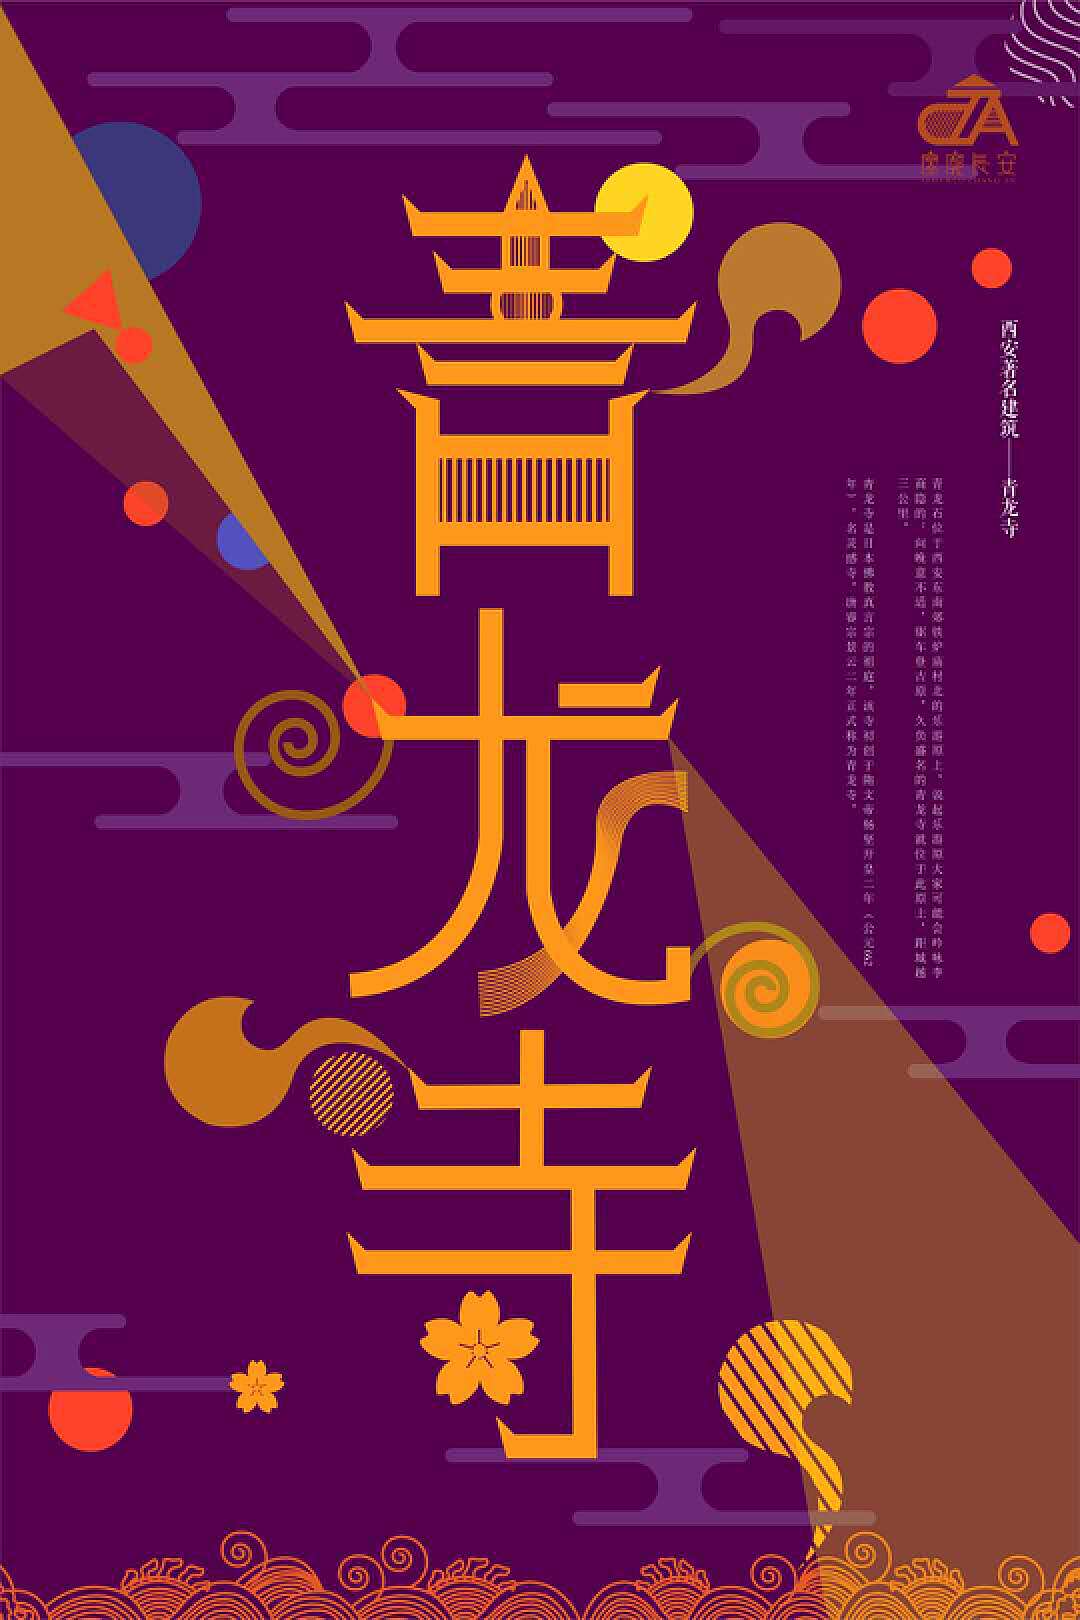 【字体设计】汉字设计的均衡和设计规范 - 衍果视觉设计培训学校